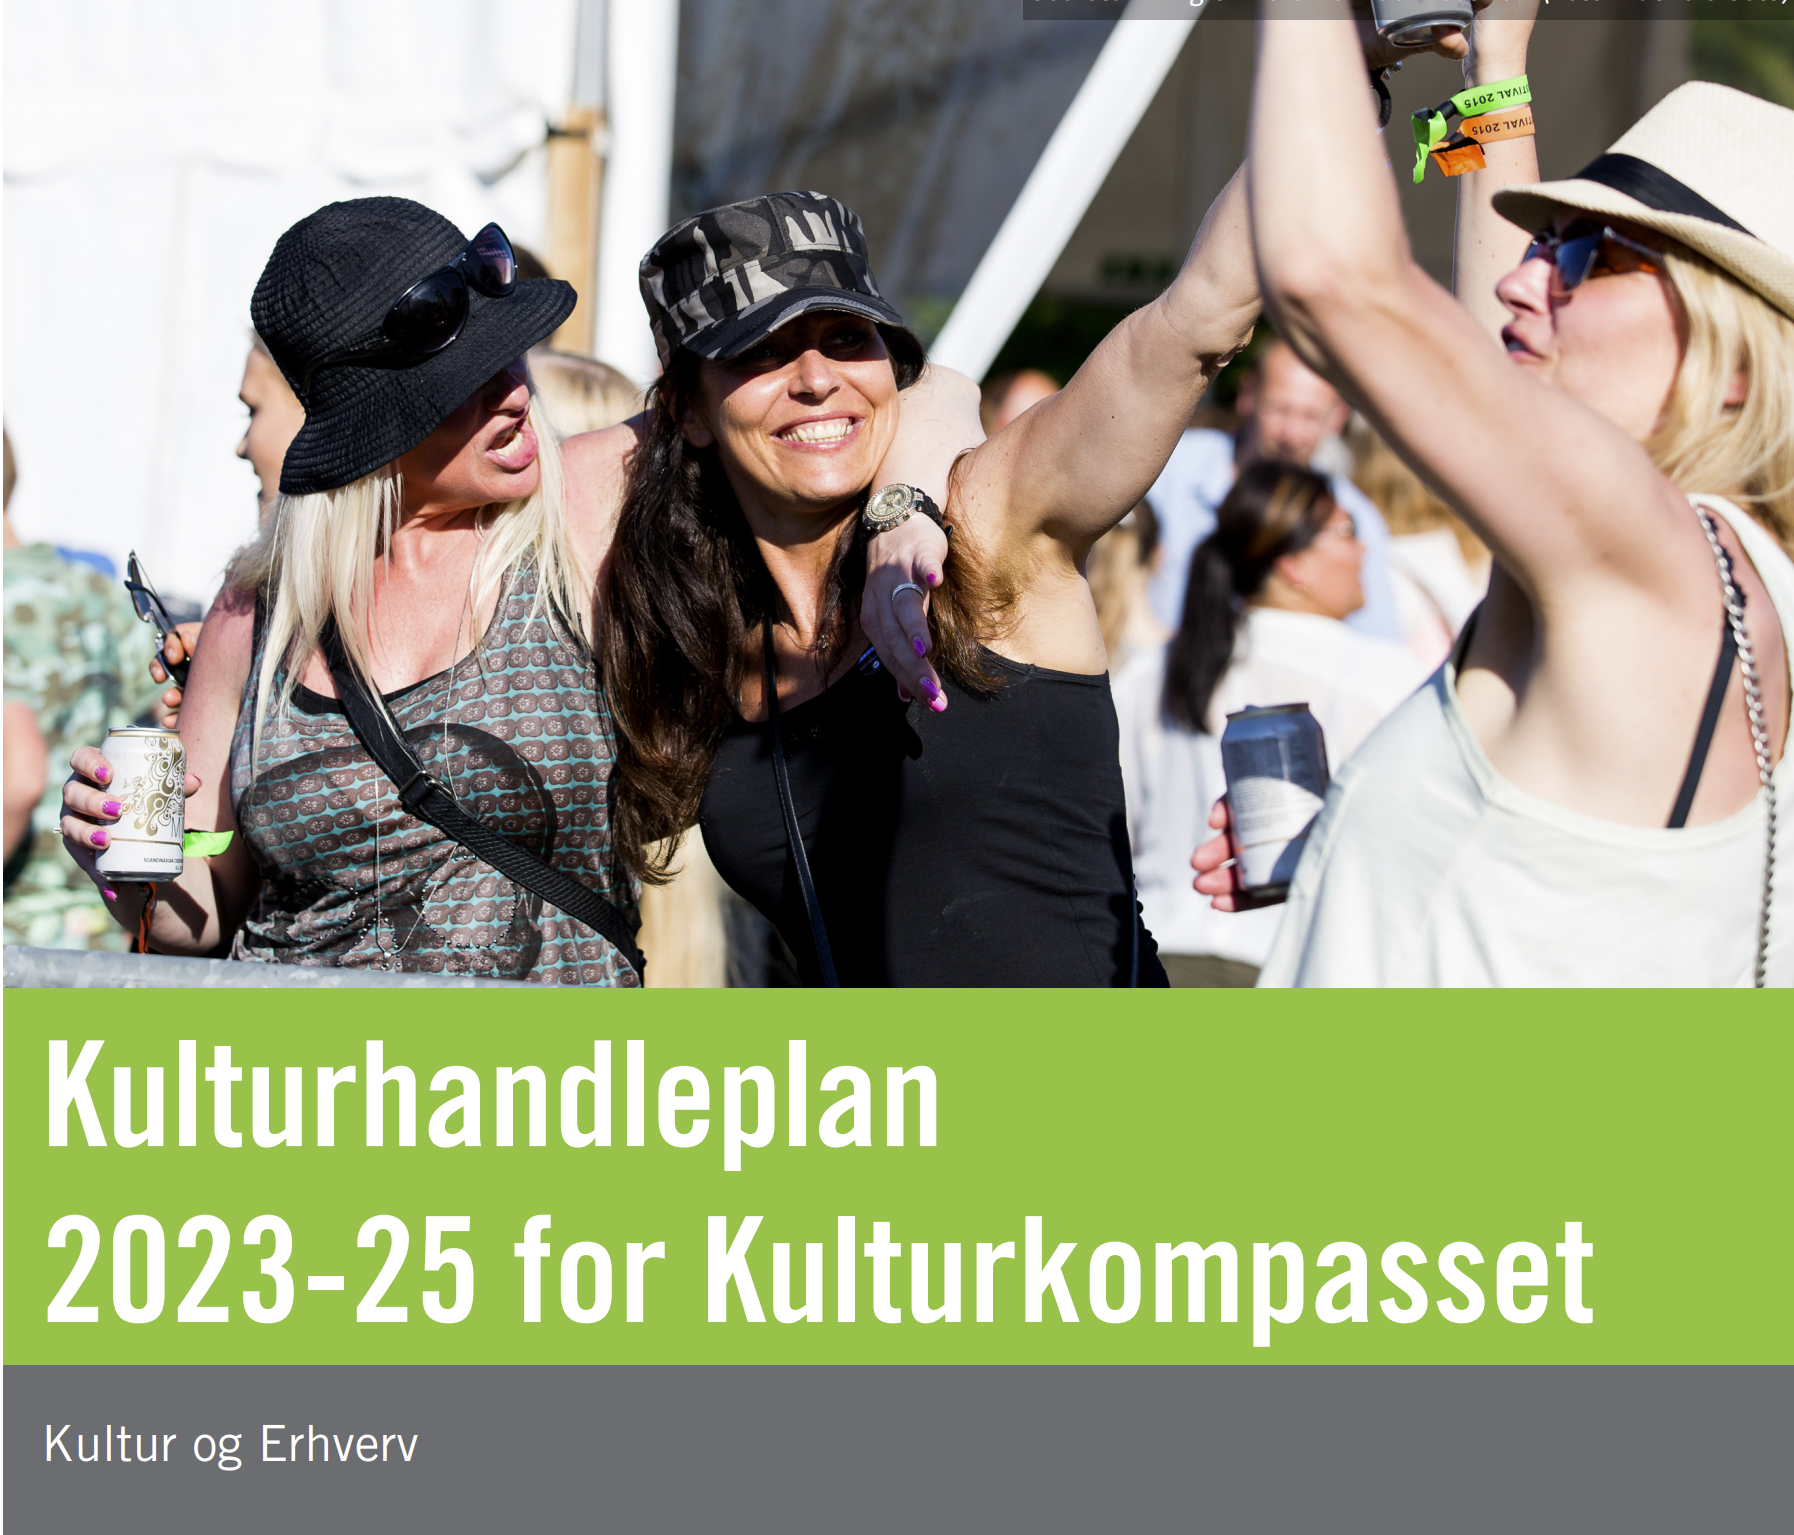 Kulturhandleplan for 2023-2025 for kulturkompasset